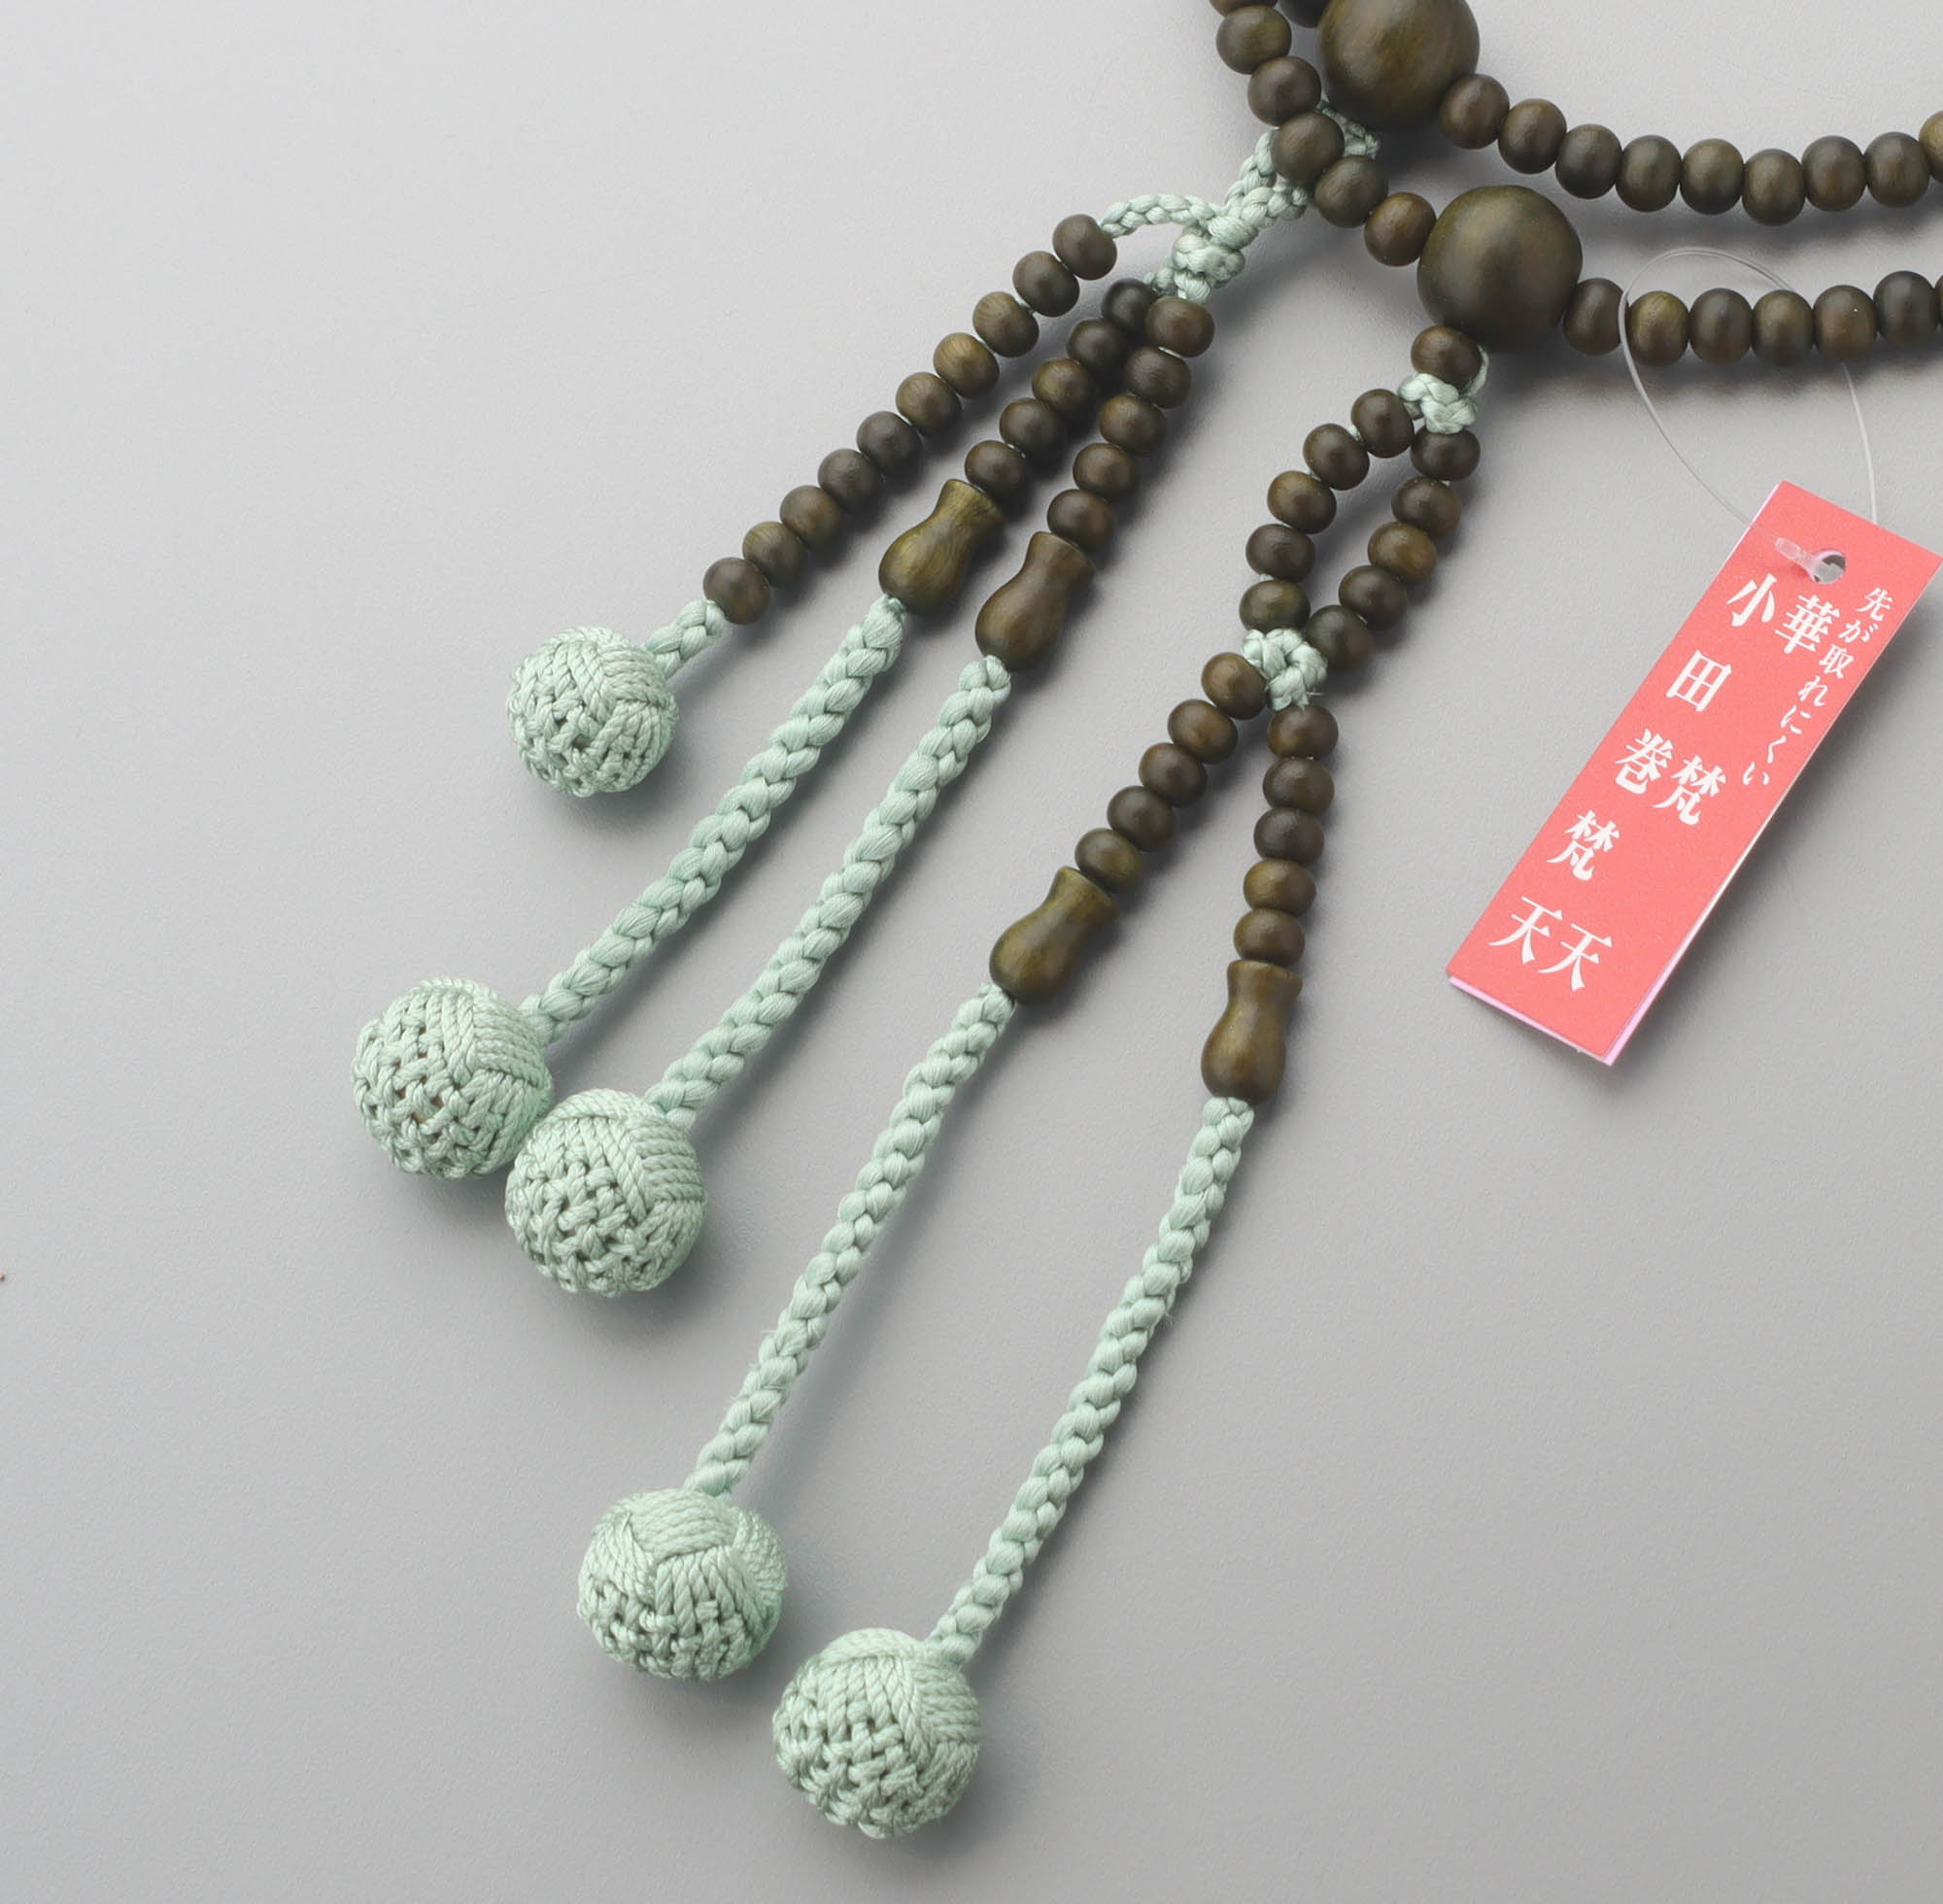 数珠 日蓮宗 女性用 法華八寸 緑檀 共仕立 華梵天房 : n220268 : 仏壇